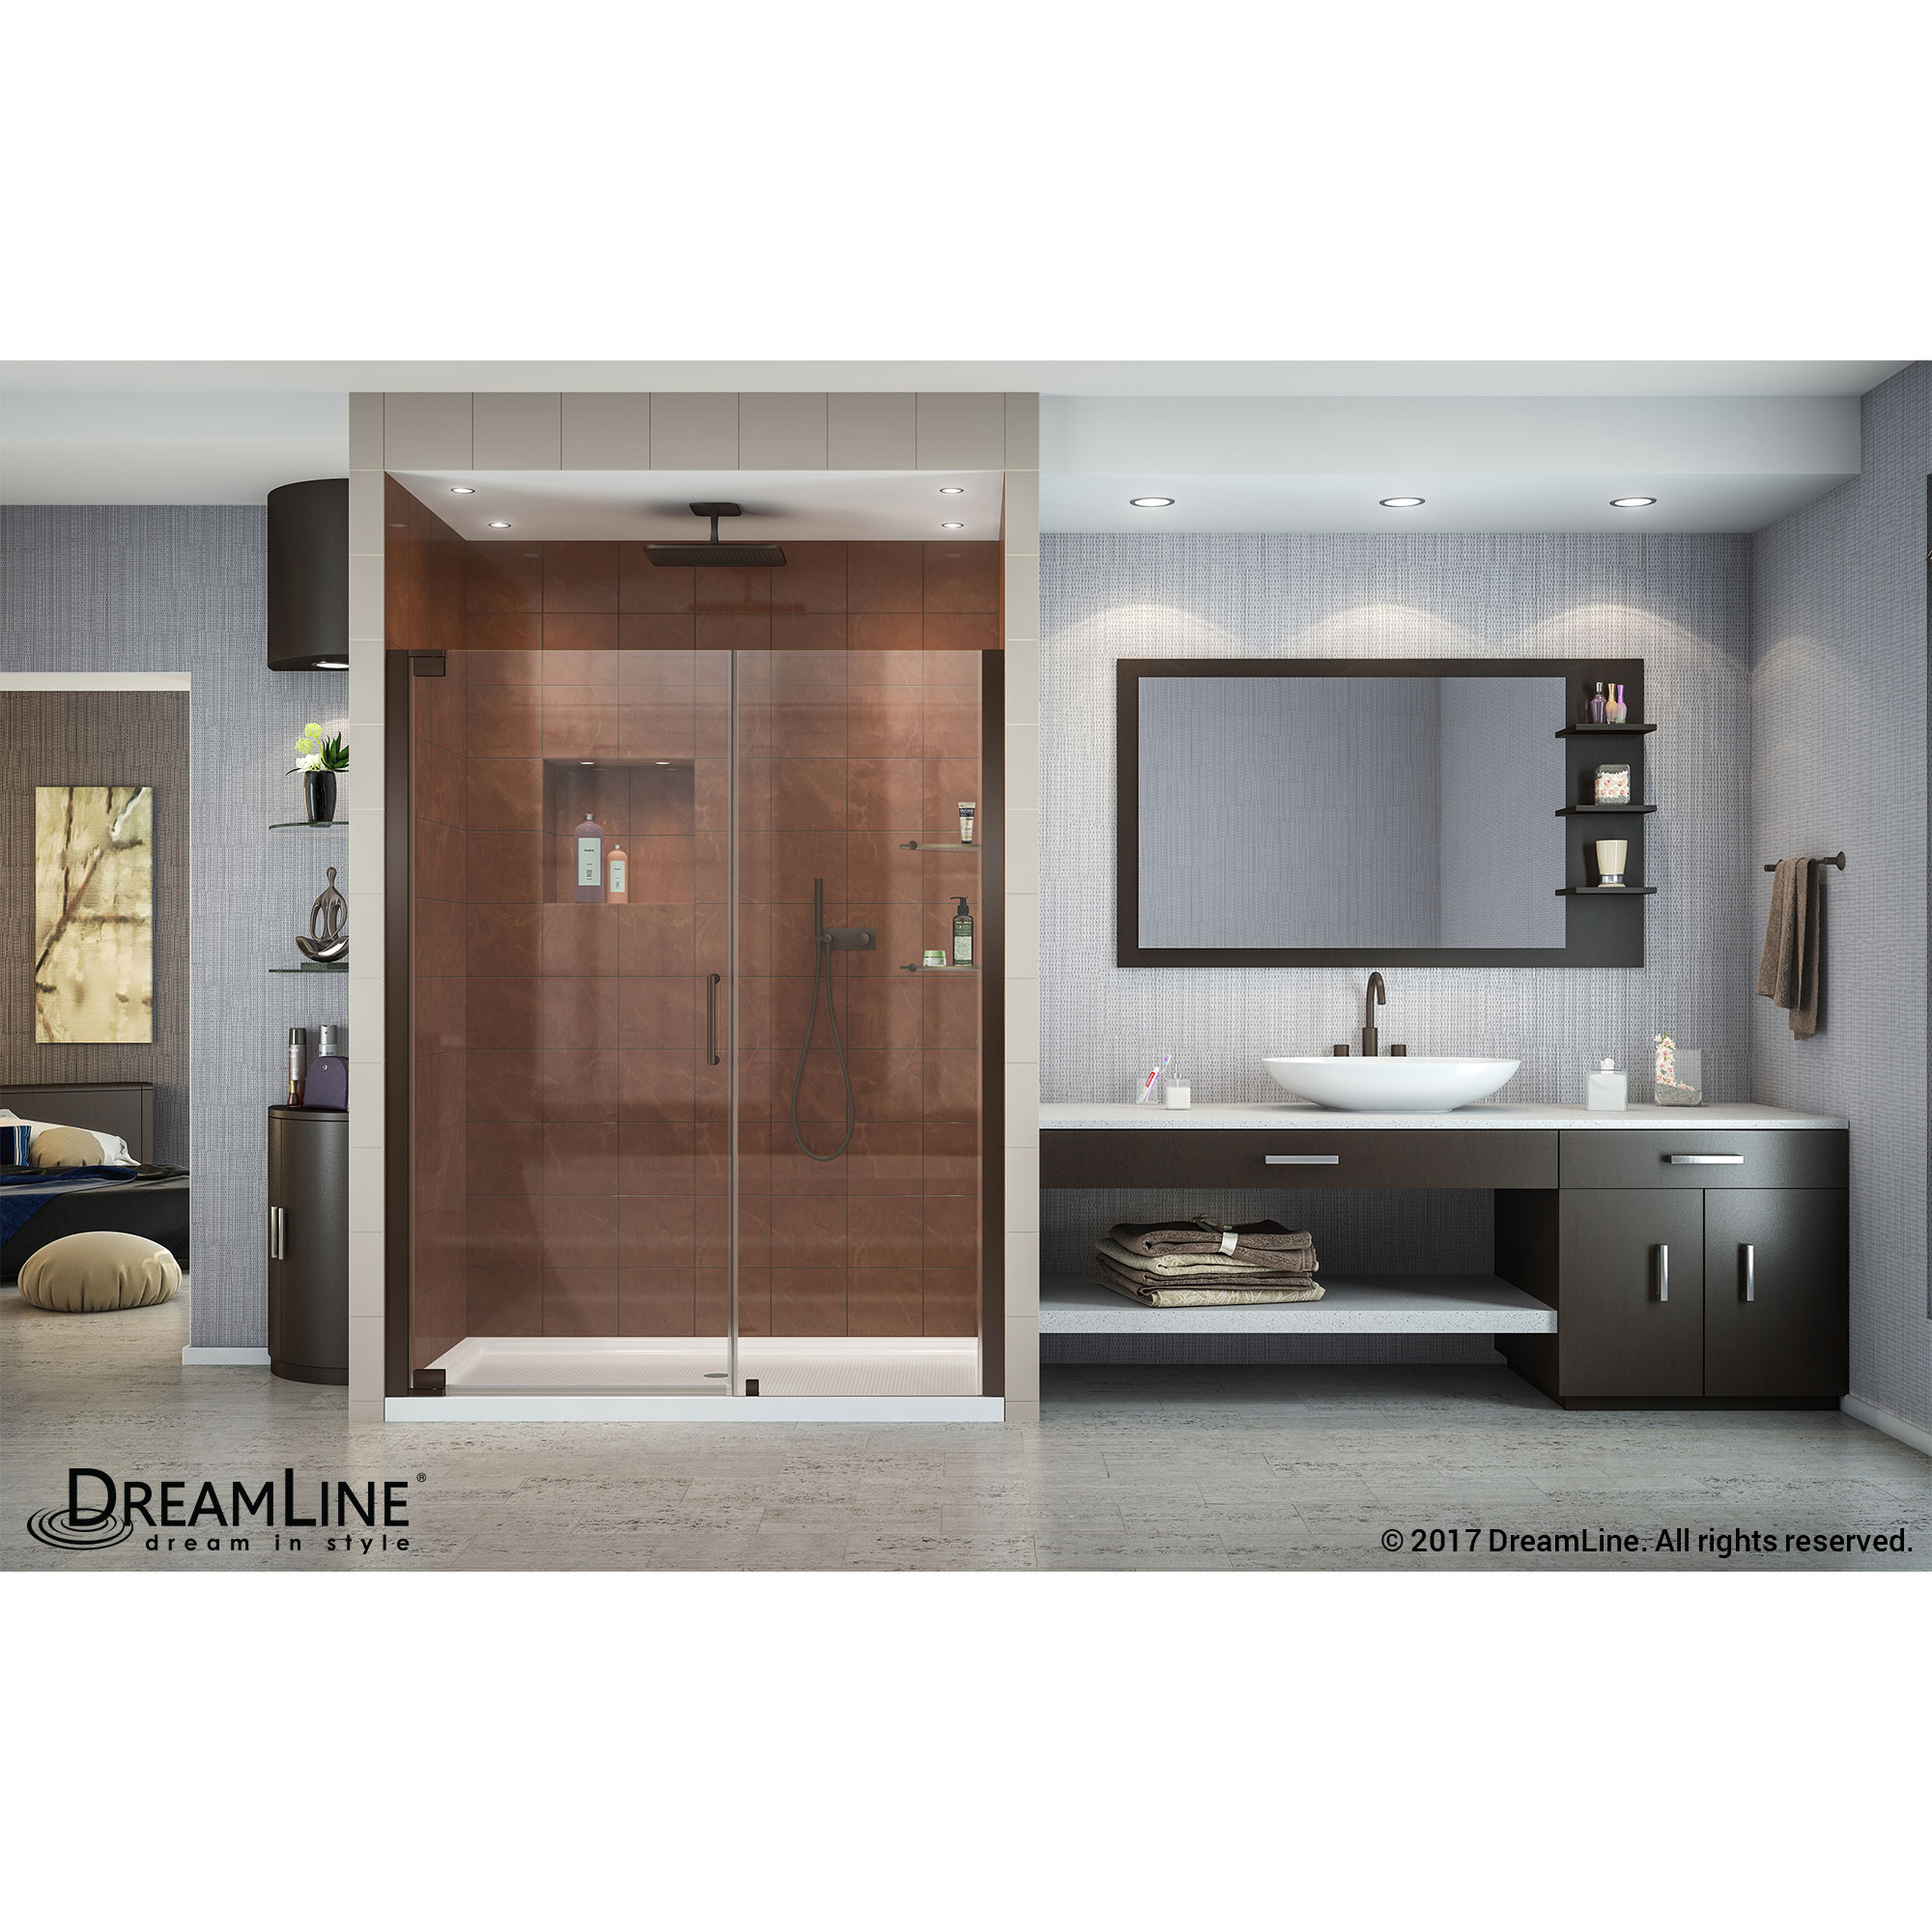 DreamLine SHDR-4154720-06 Oil Rubbed Bronze Elegance 54 1/2 to 56 1/2" Frameless Pivot Shower Door